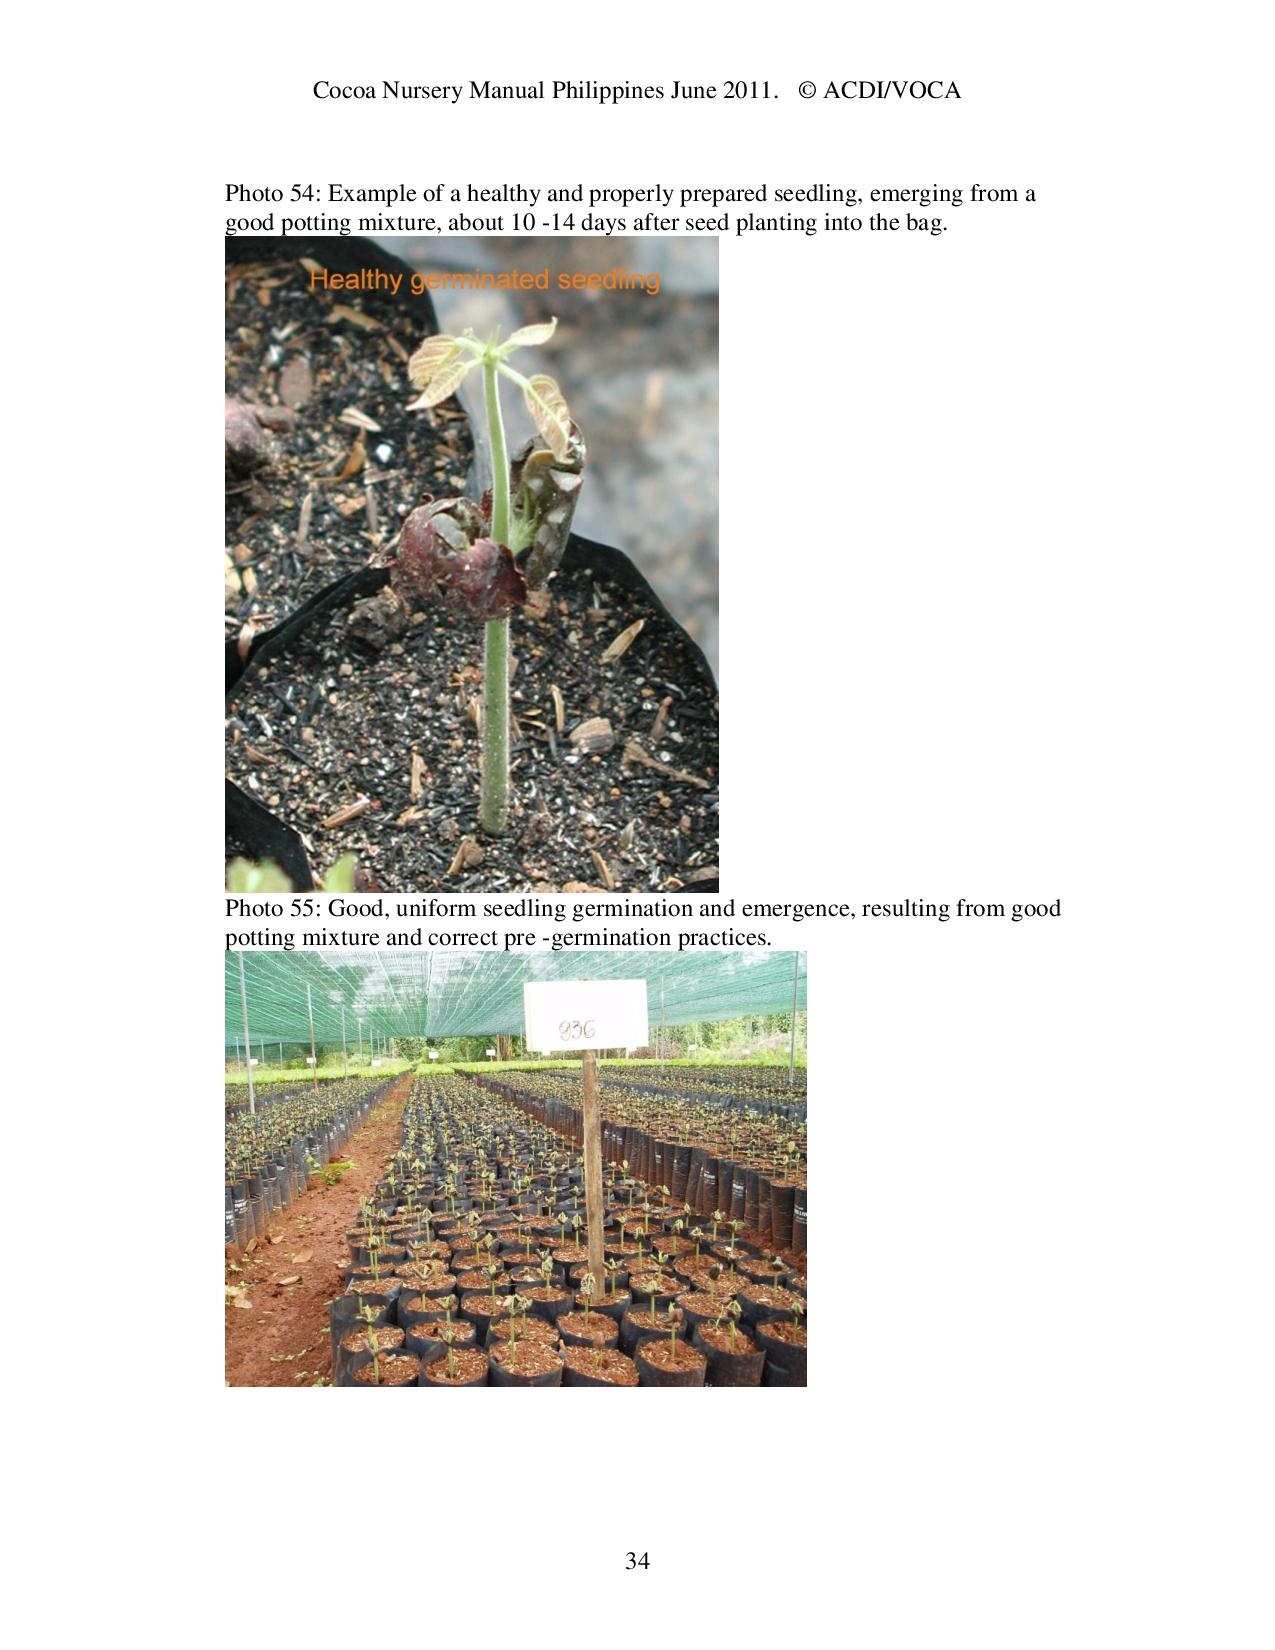 Cocoa-Nursery-Manual-2011_acdi-voca-page-034